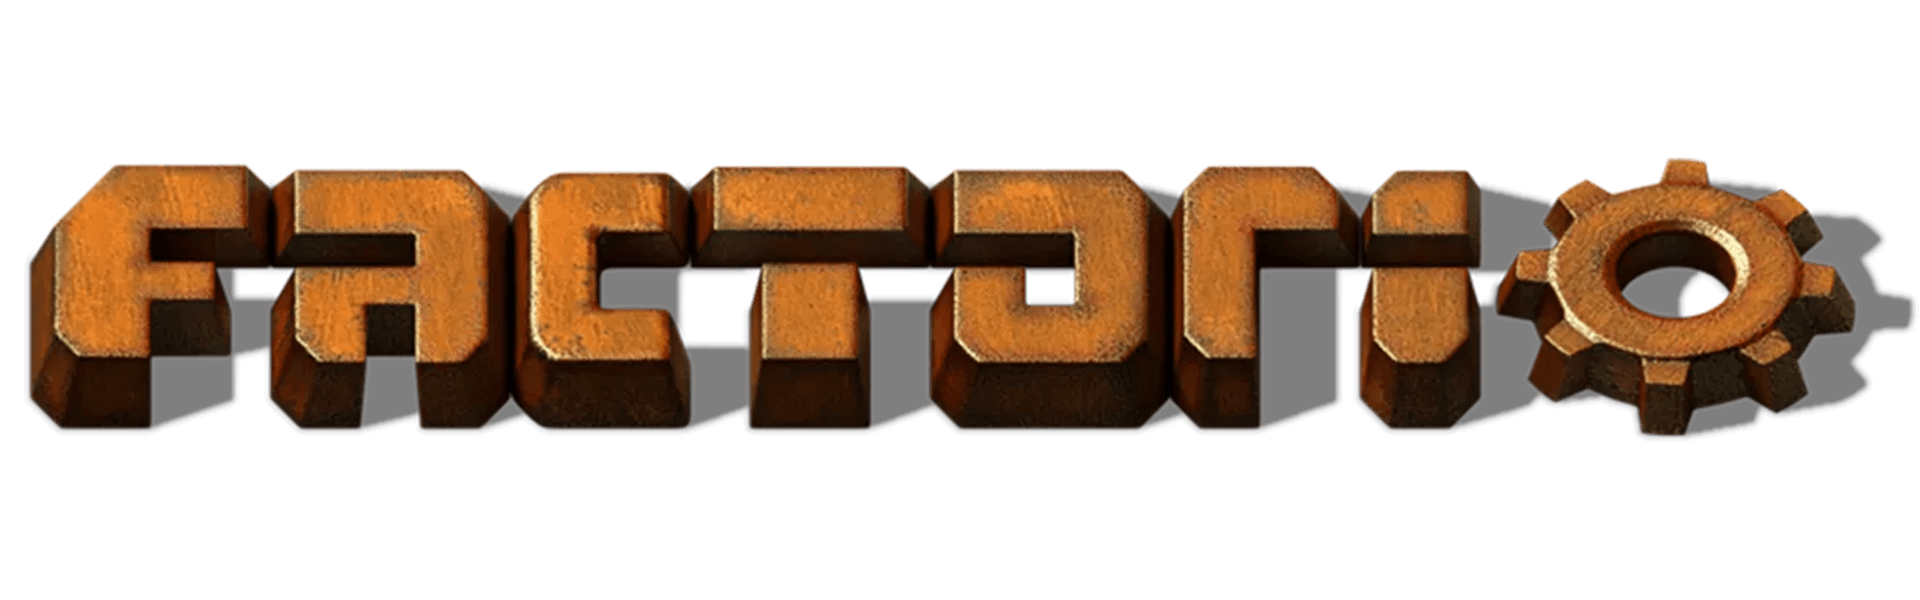 factorio game server logo